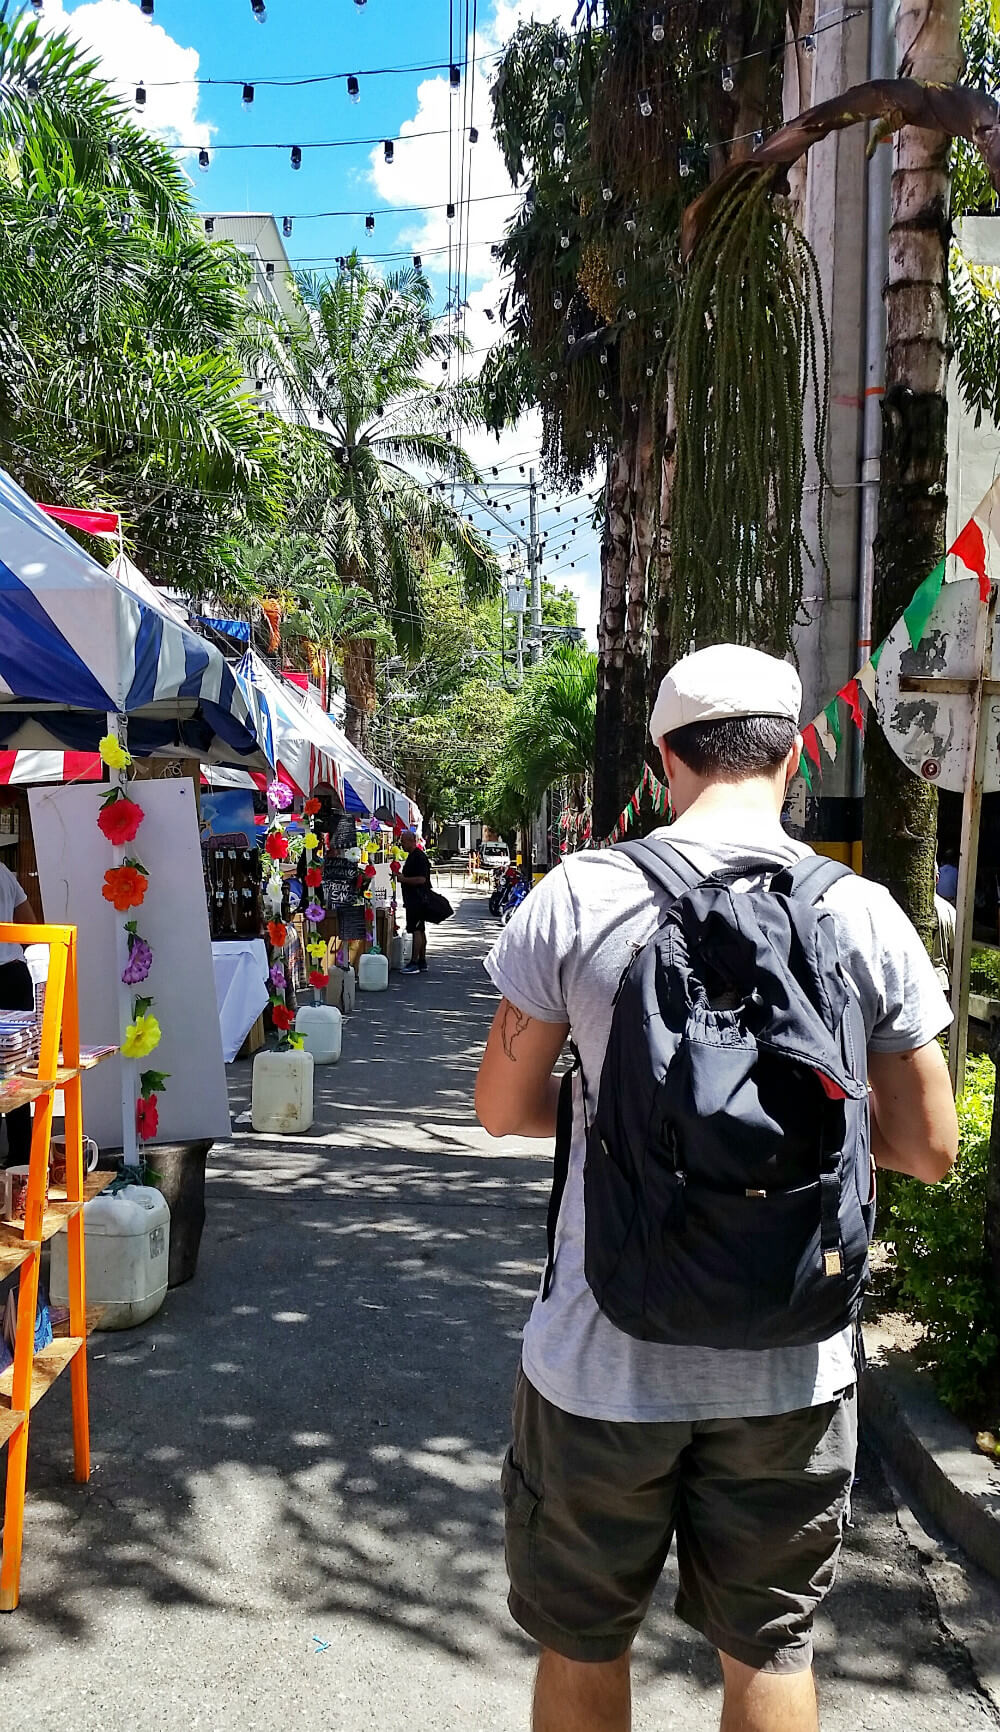 Markets El Poblado | 10 Solid Reasons To Visit Medellin, Colombia Next